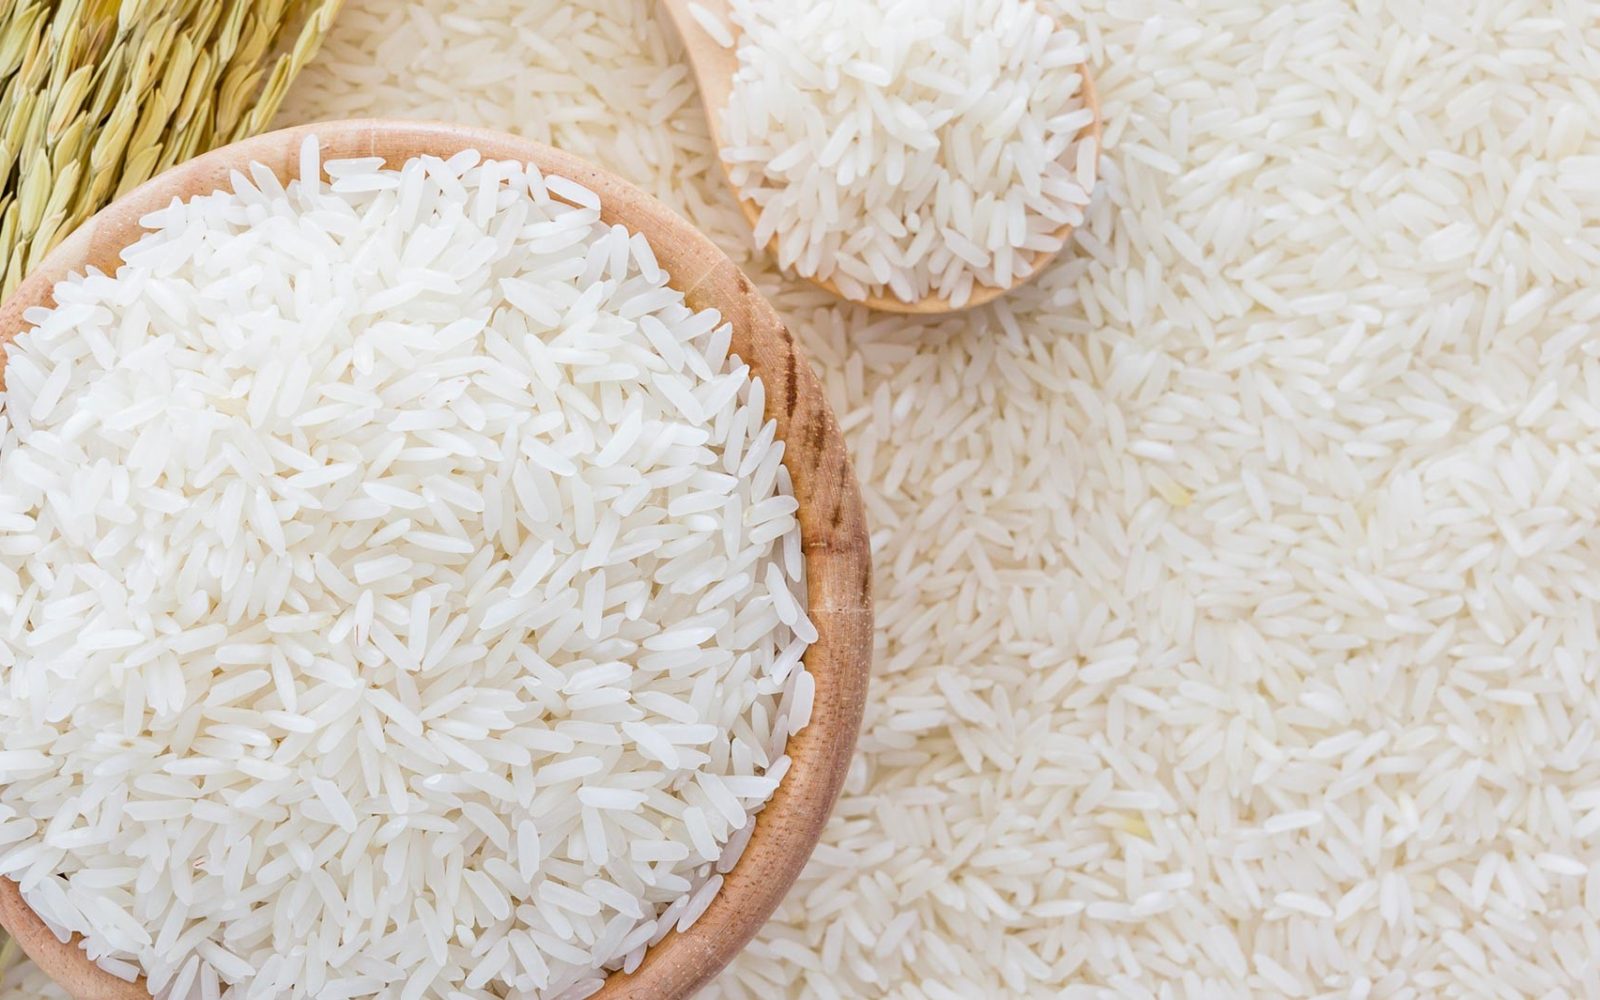 شعبة الأرز : 100-200 جنيه انخفاضًا في سعر الطن